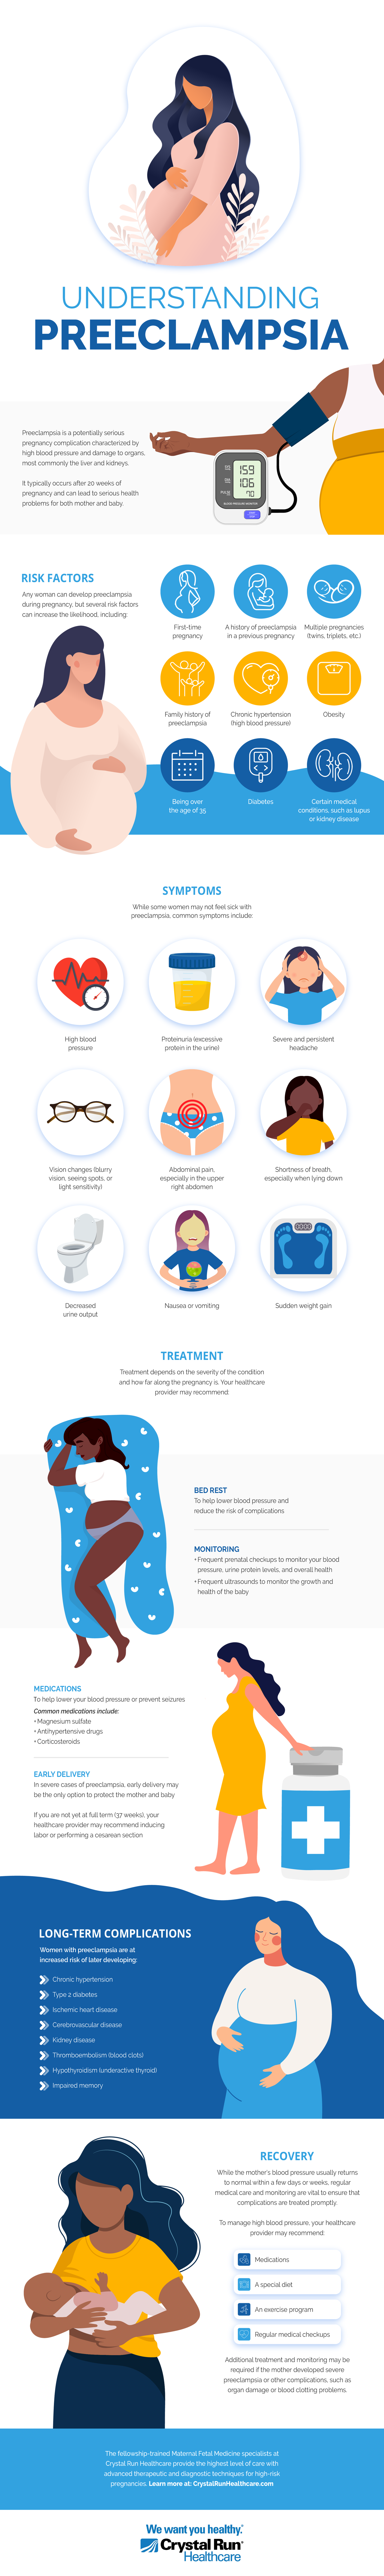 Understanding Preeclampsia Infographic